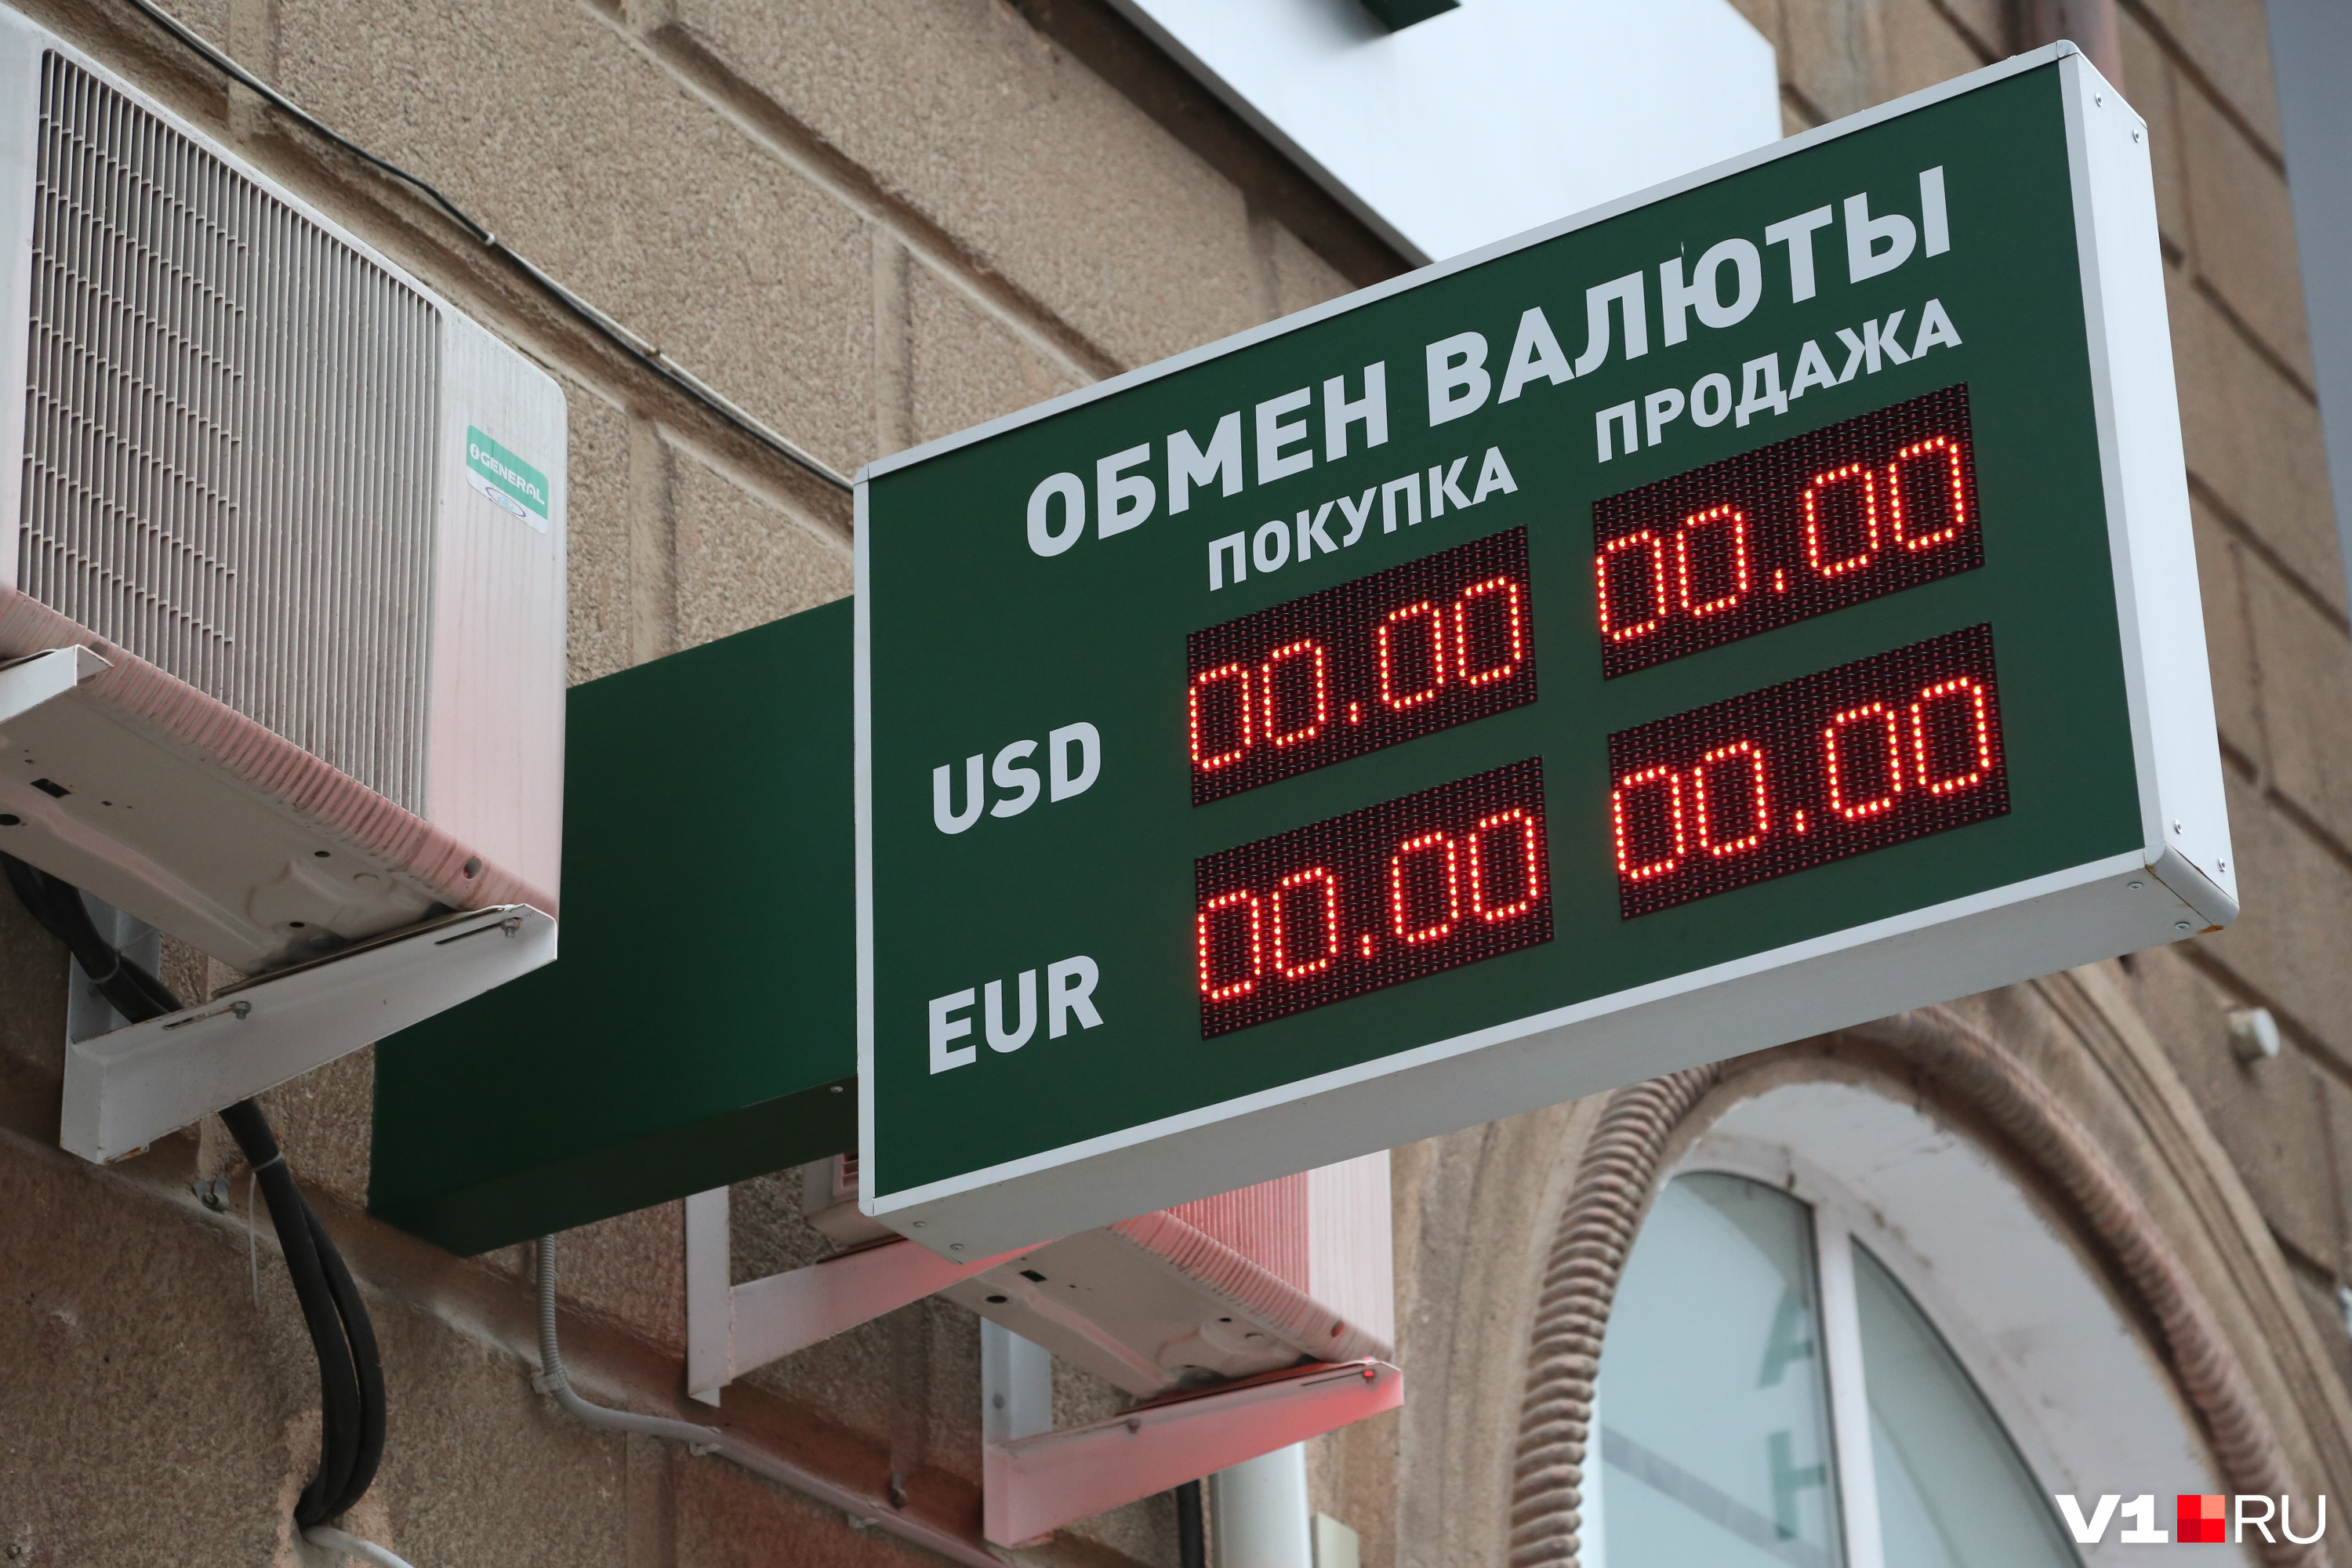 Купить валюту в Волгограде — квест еще тот